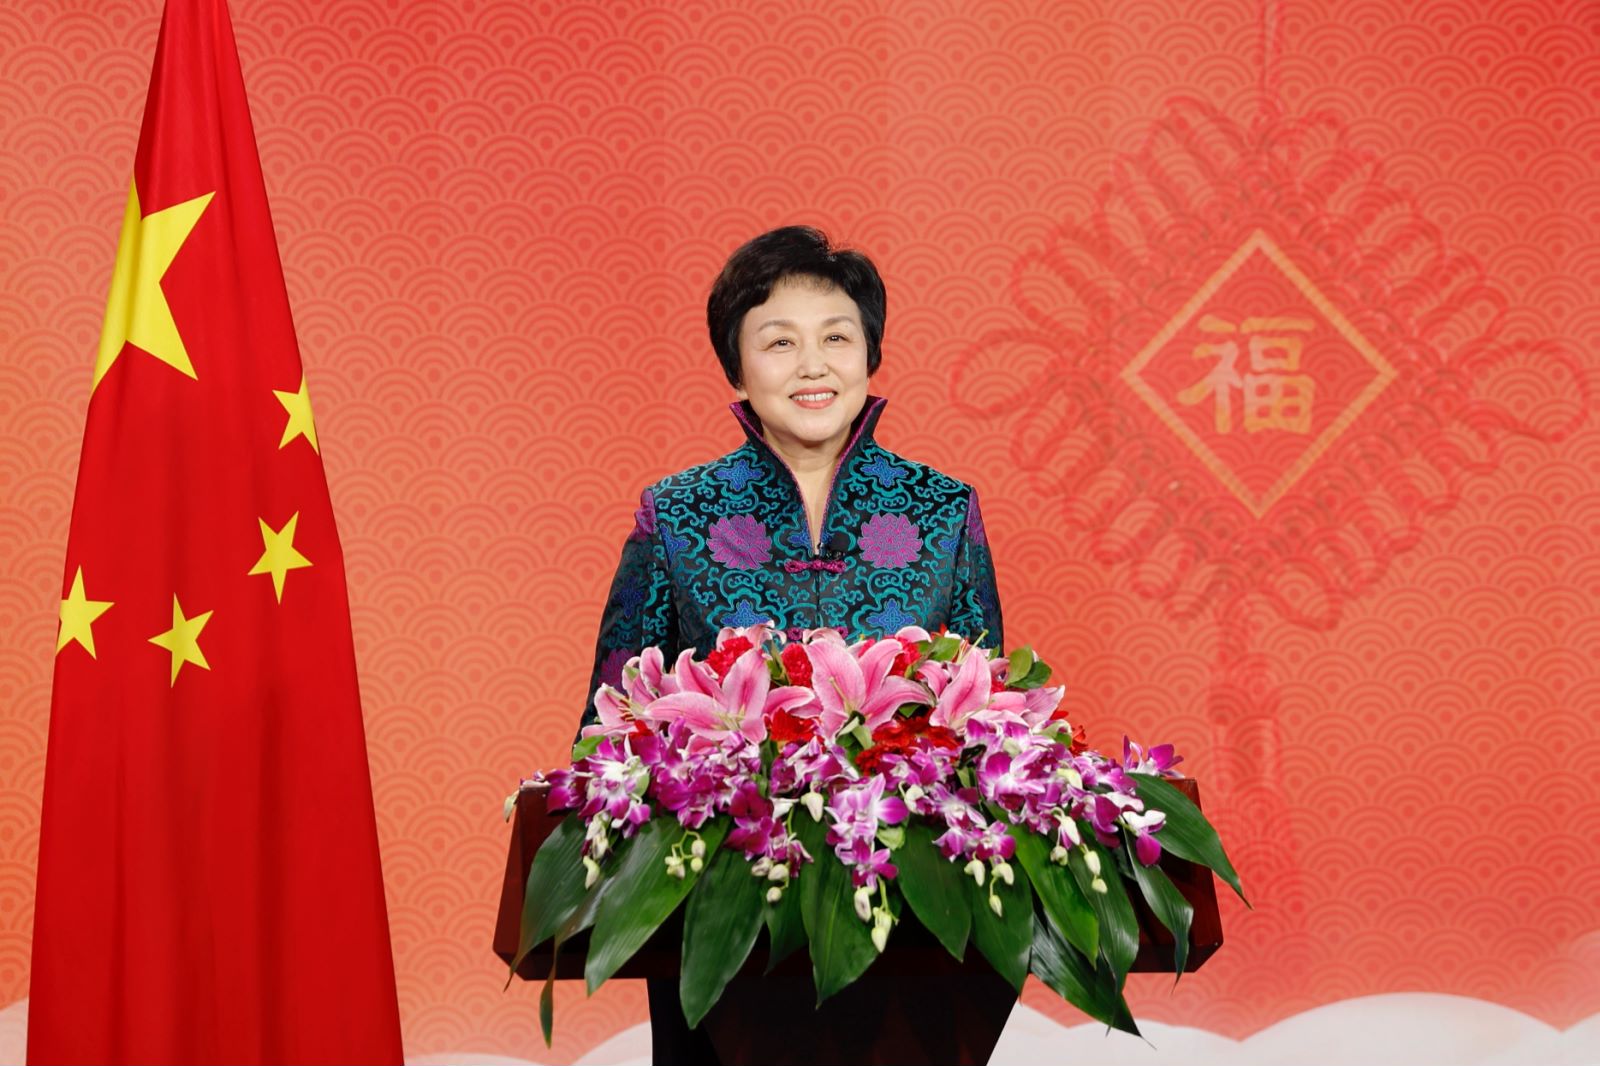 中国国务院侨务办公室主任陈旭在北京发表新春贺词,向广大海外侨胞和